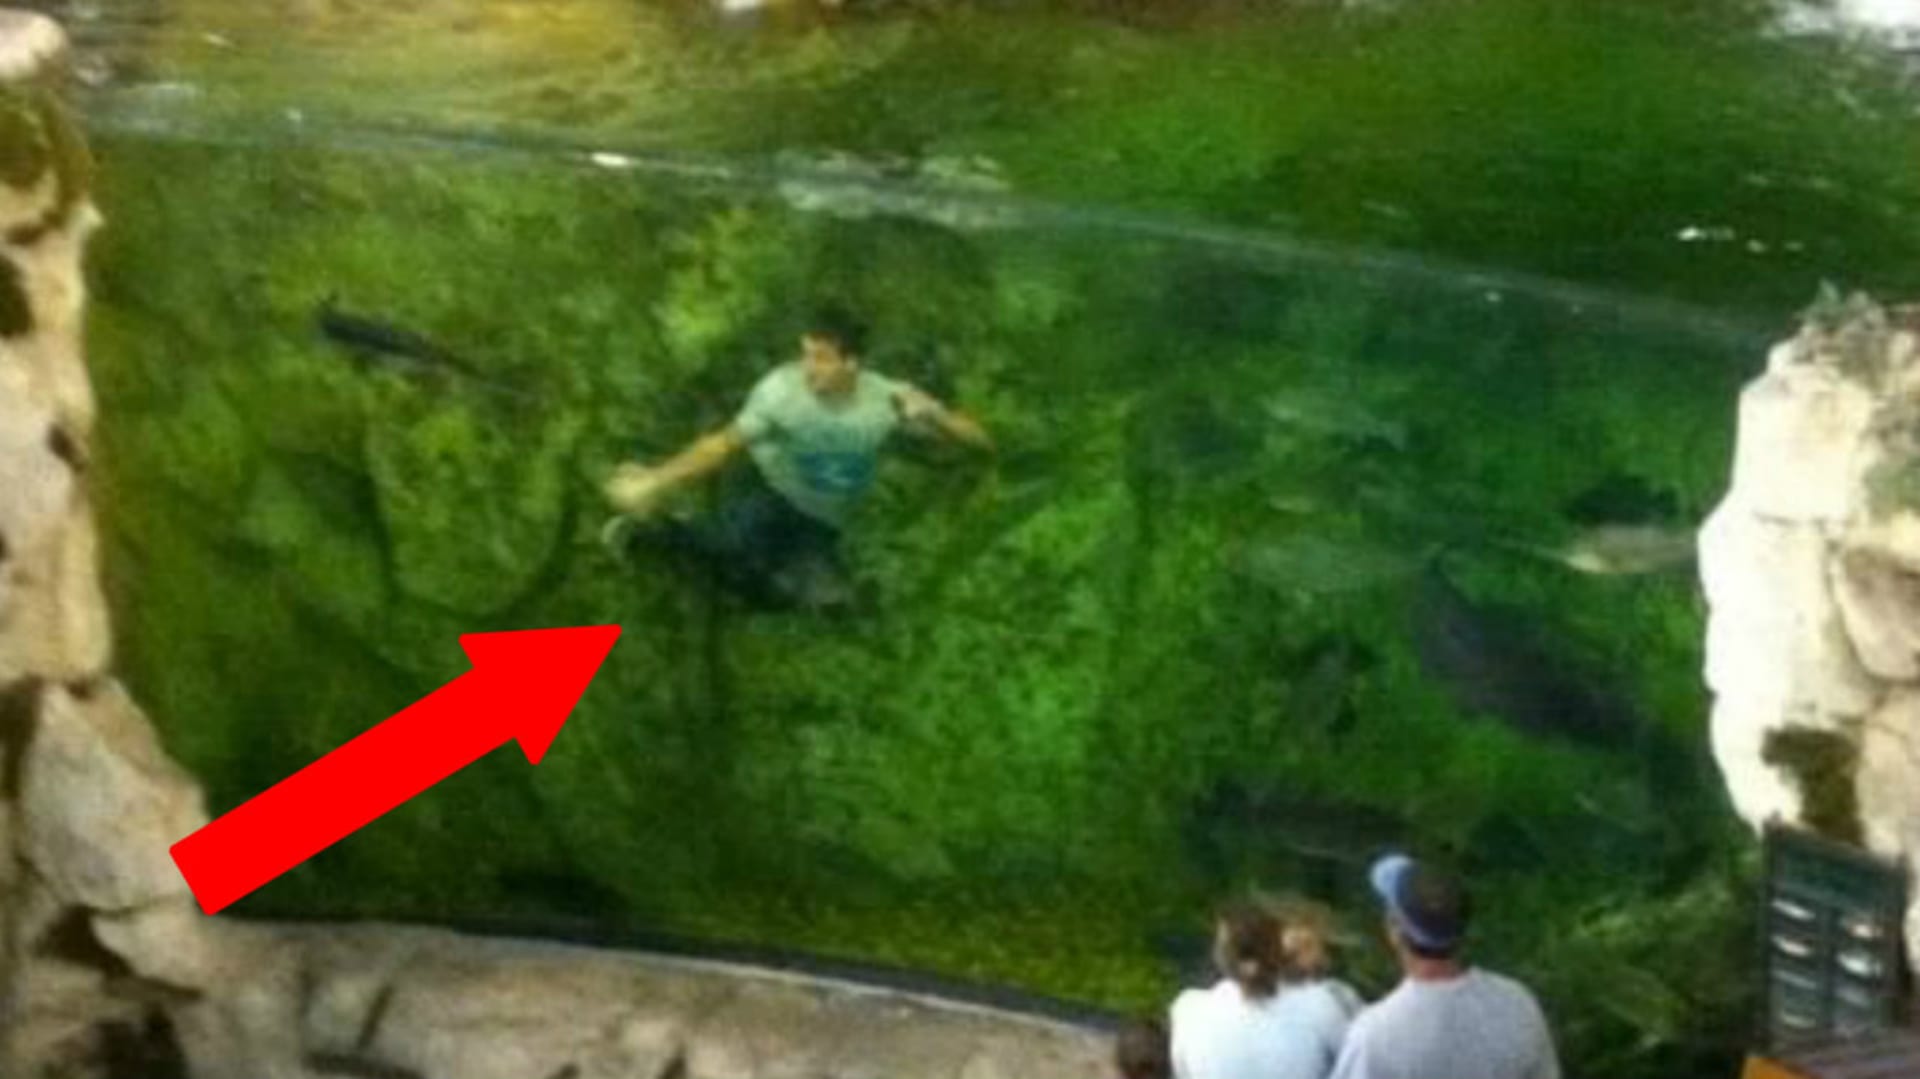 Proč mladík skákal do obřího akvária?